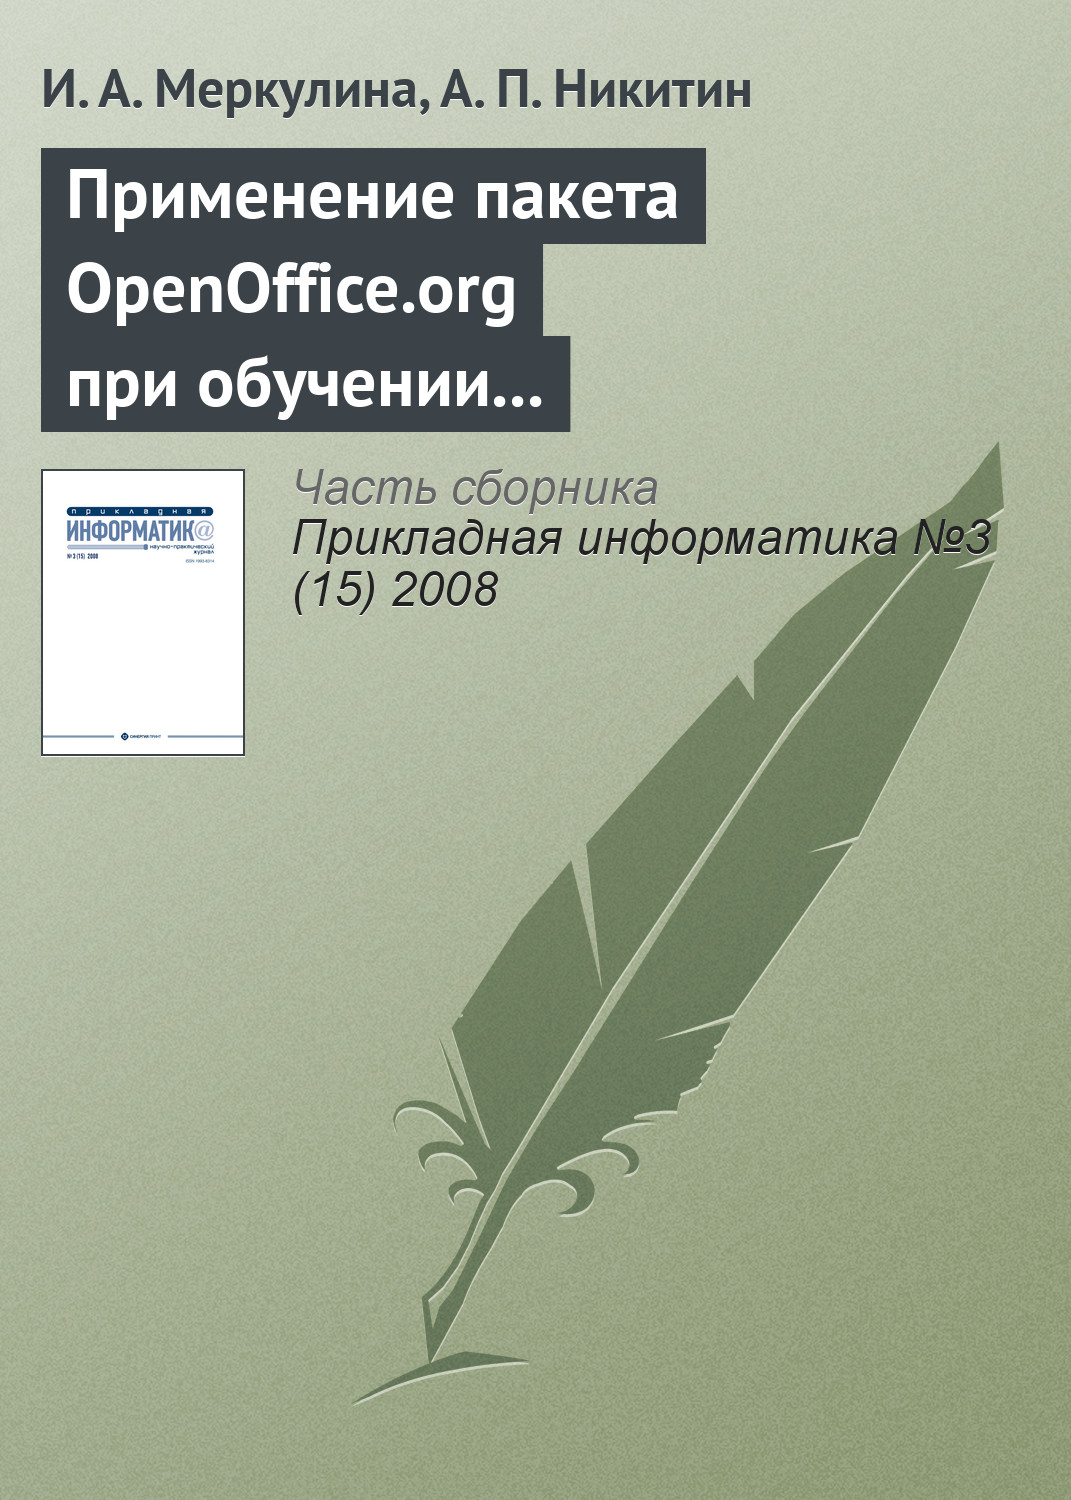 Применение пакета OpenOffice.org при обучении методам экономического анализа